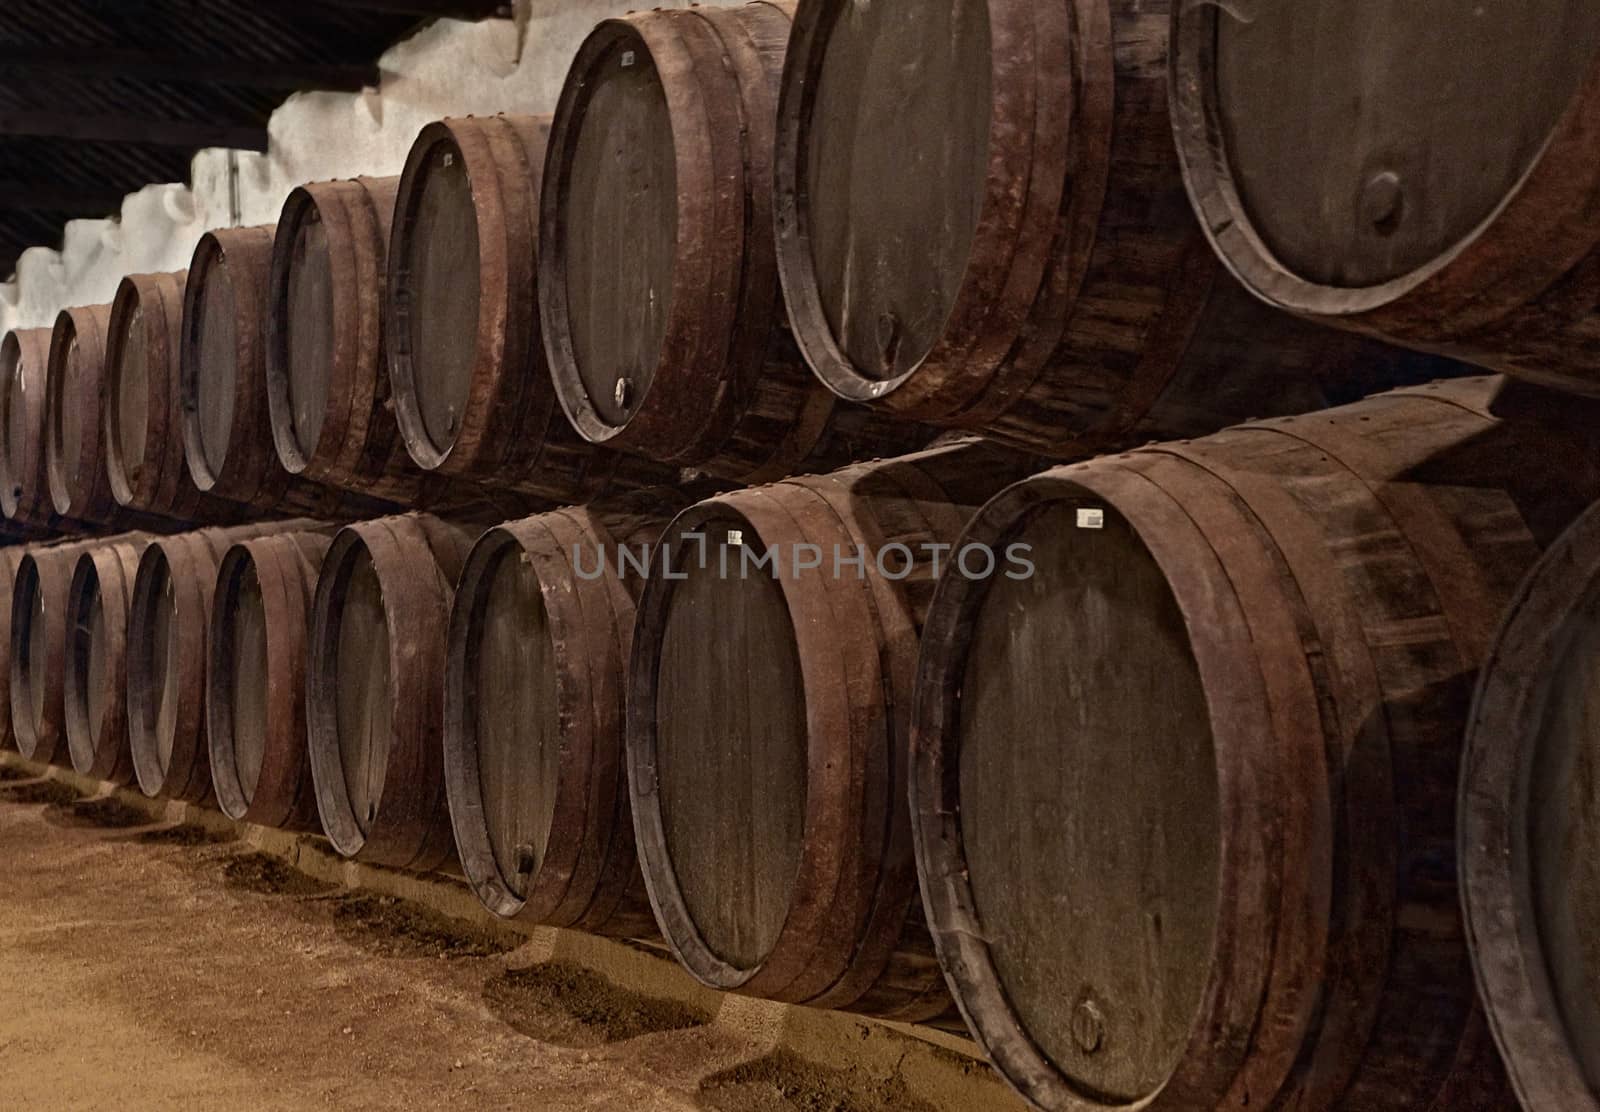 Barrels with wine in Porto, Portugal